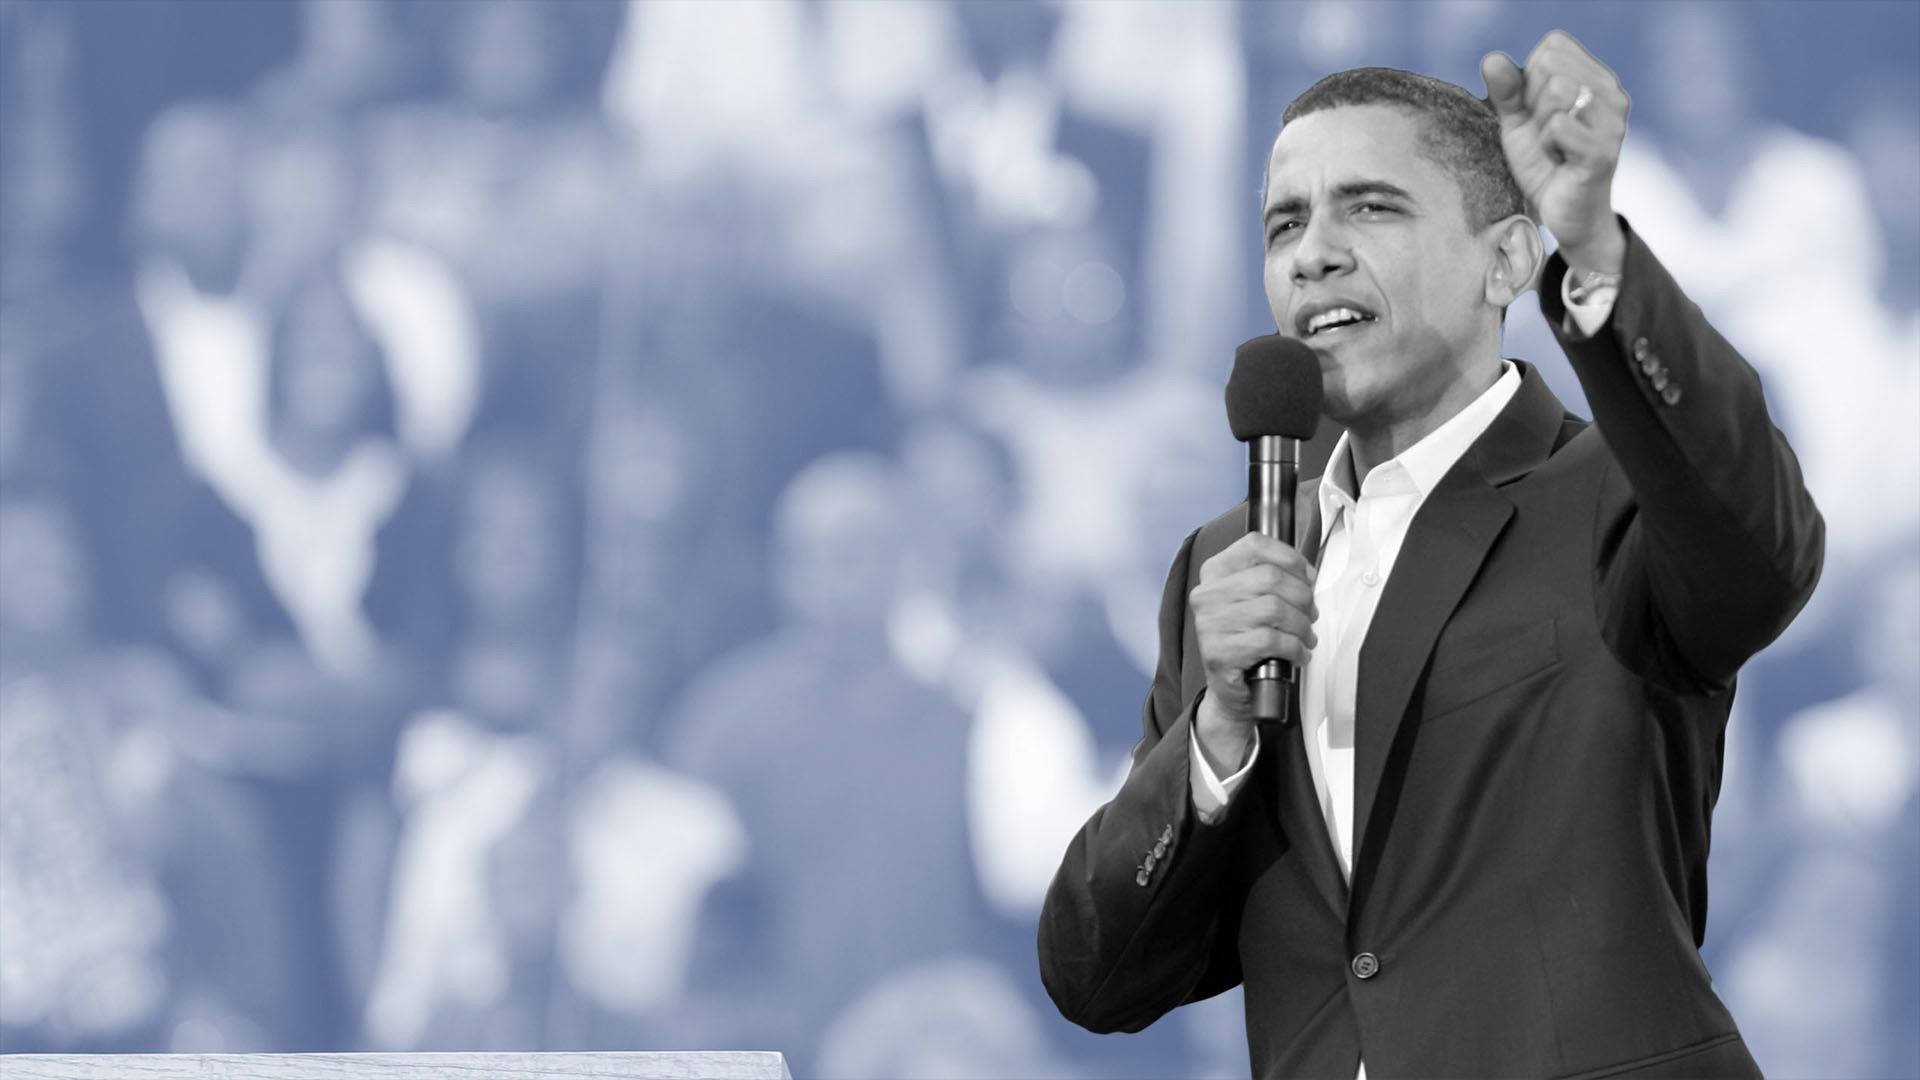 Greyscale Barack Obama Delivering Speech